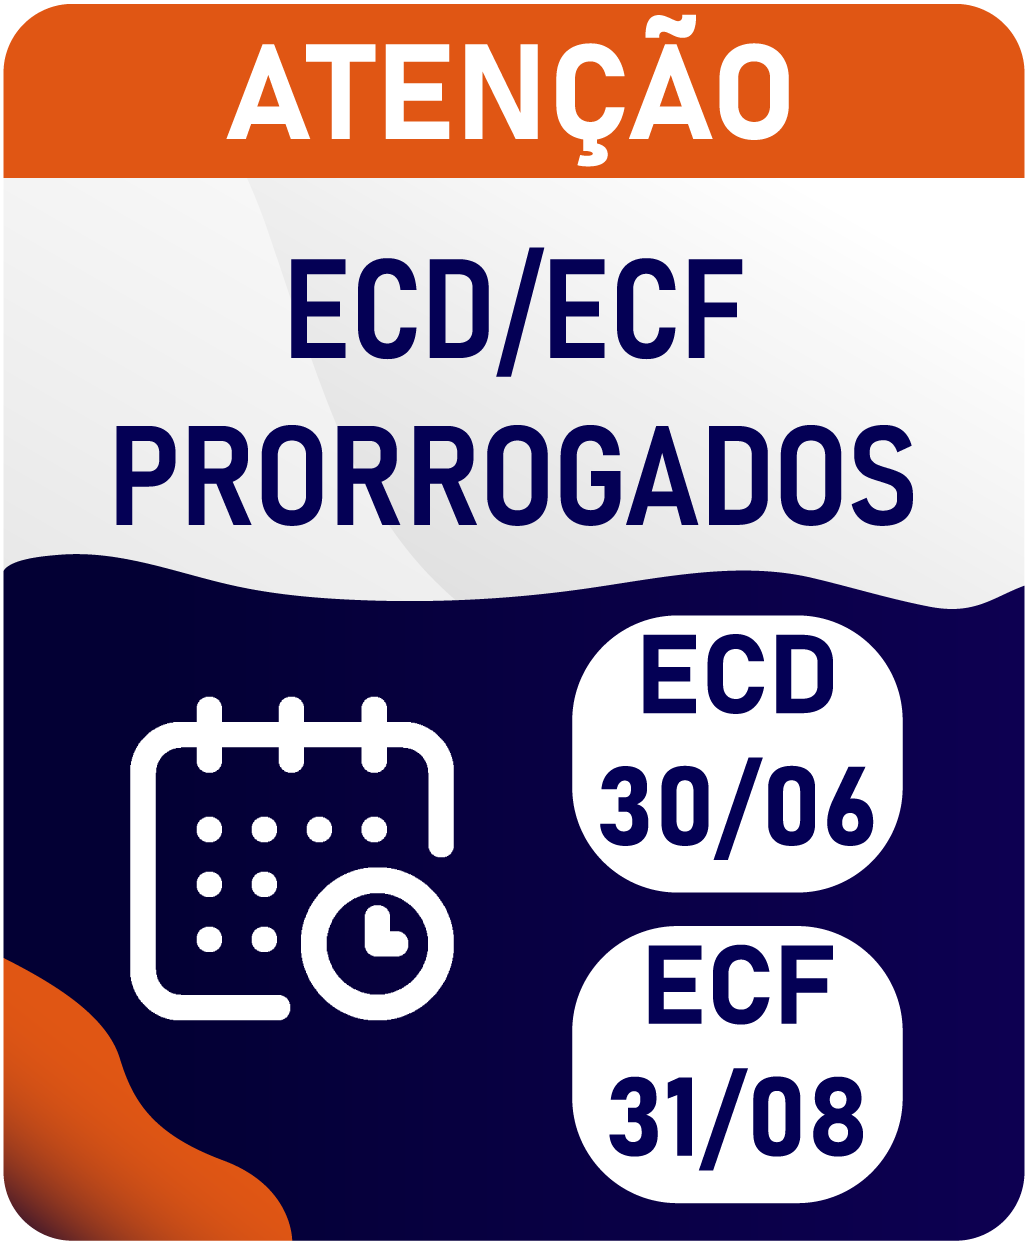 ATENÇÃO: ECD e ECF prorrogados!